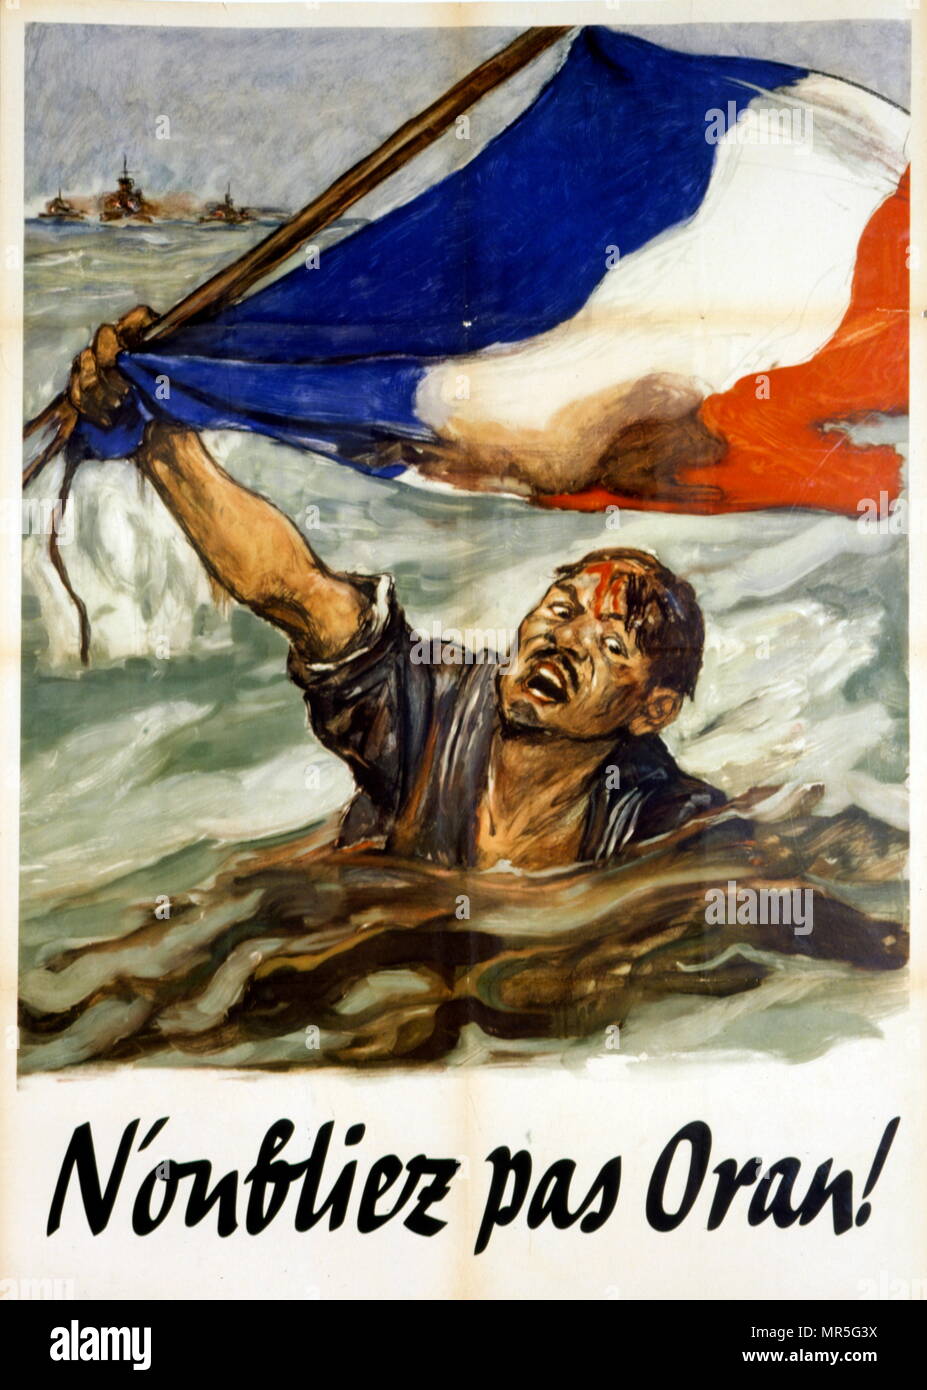 Französische Weltkrieg zwei Vichy Propaganda Poster' erinnern Oran' 1942. Nach der Operation Torch, der British-United States Invasion der französischen Nordafrika während der Nordafrikanischen Kampagne der Zweite Weltkrieg, der am 8. November 1942 gestartet Veröffentlicht. Stockfoto